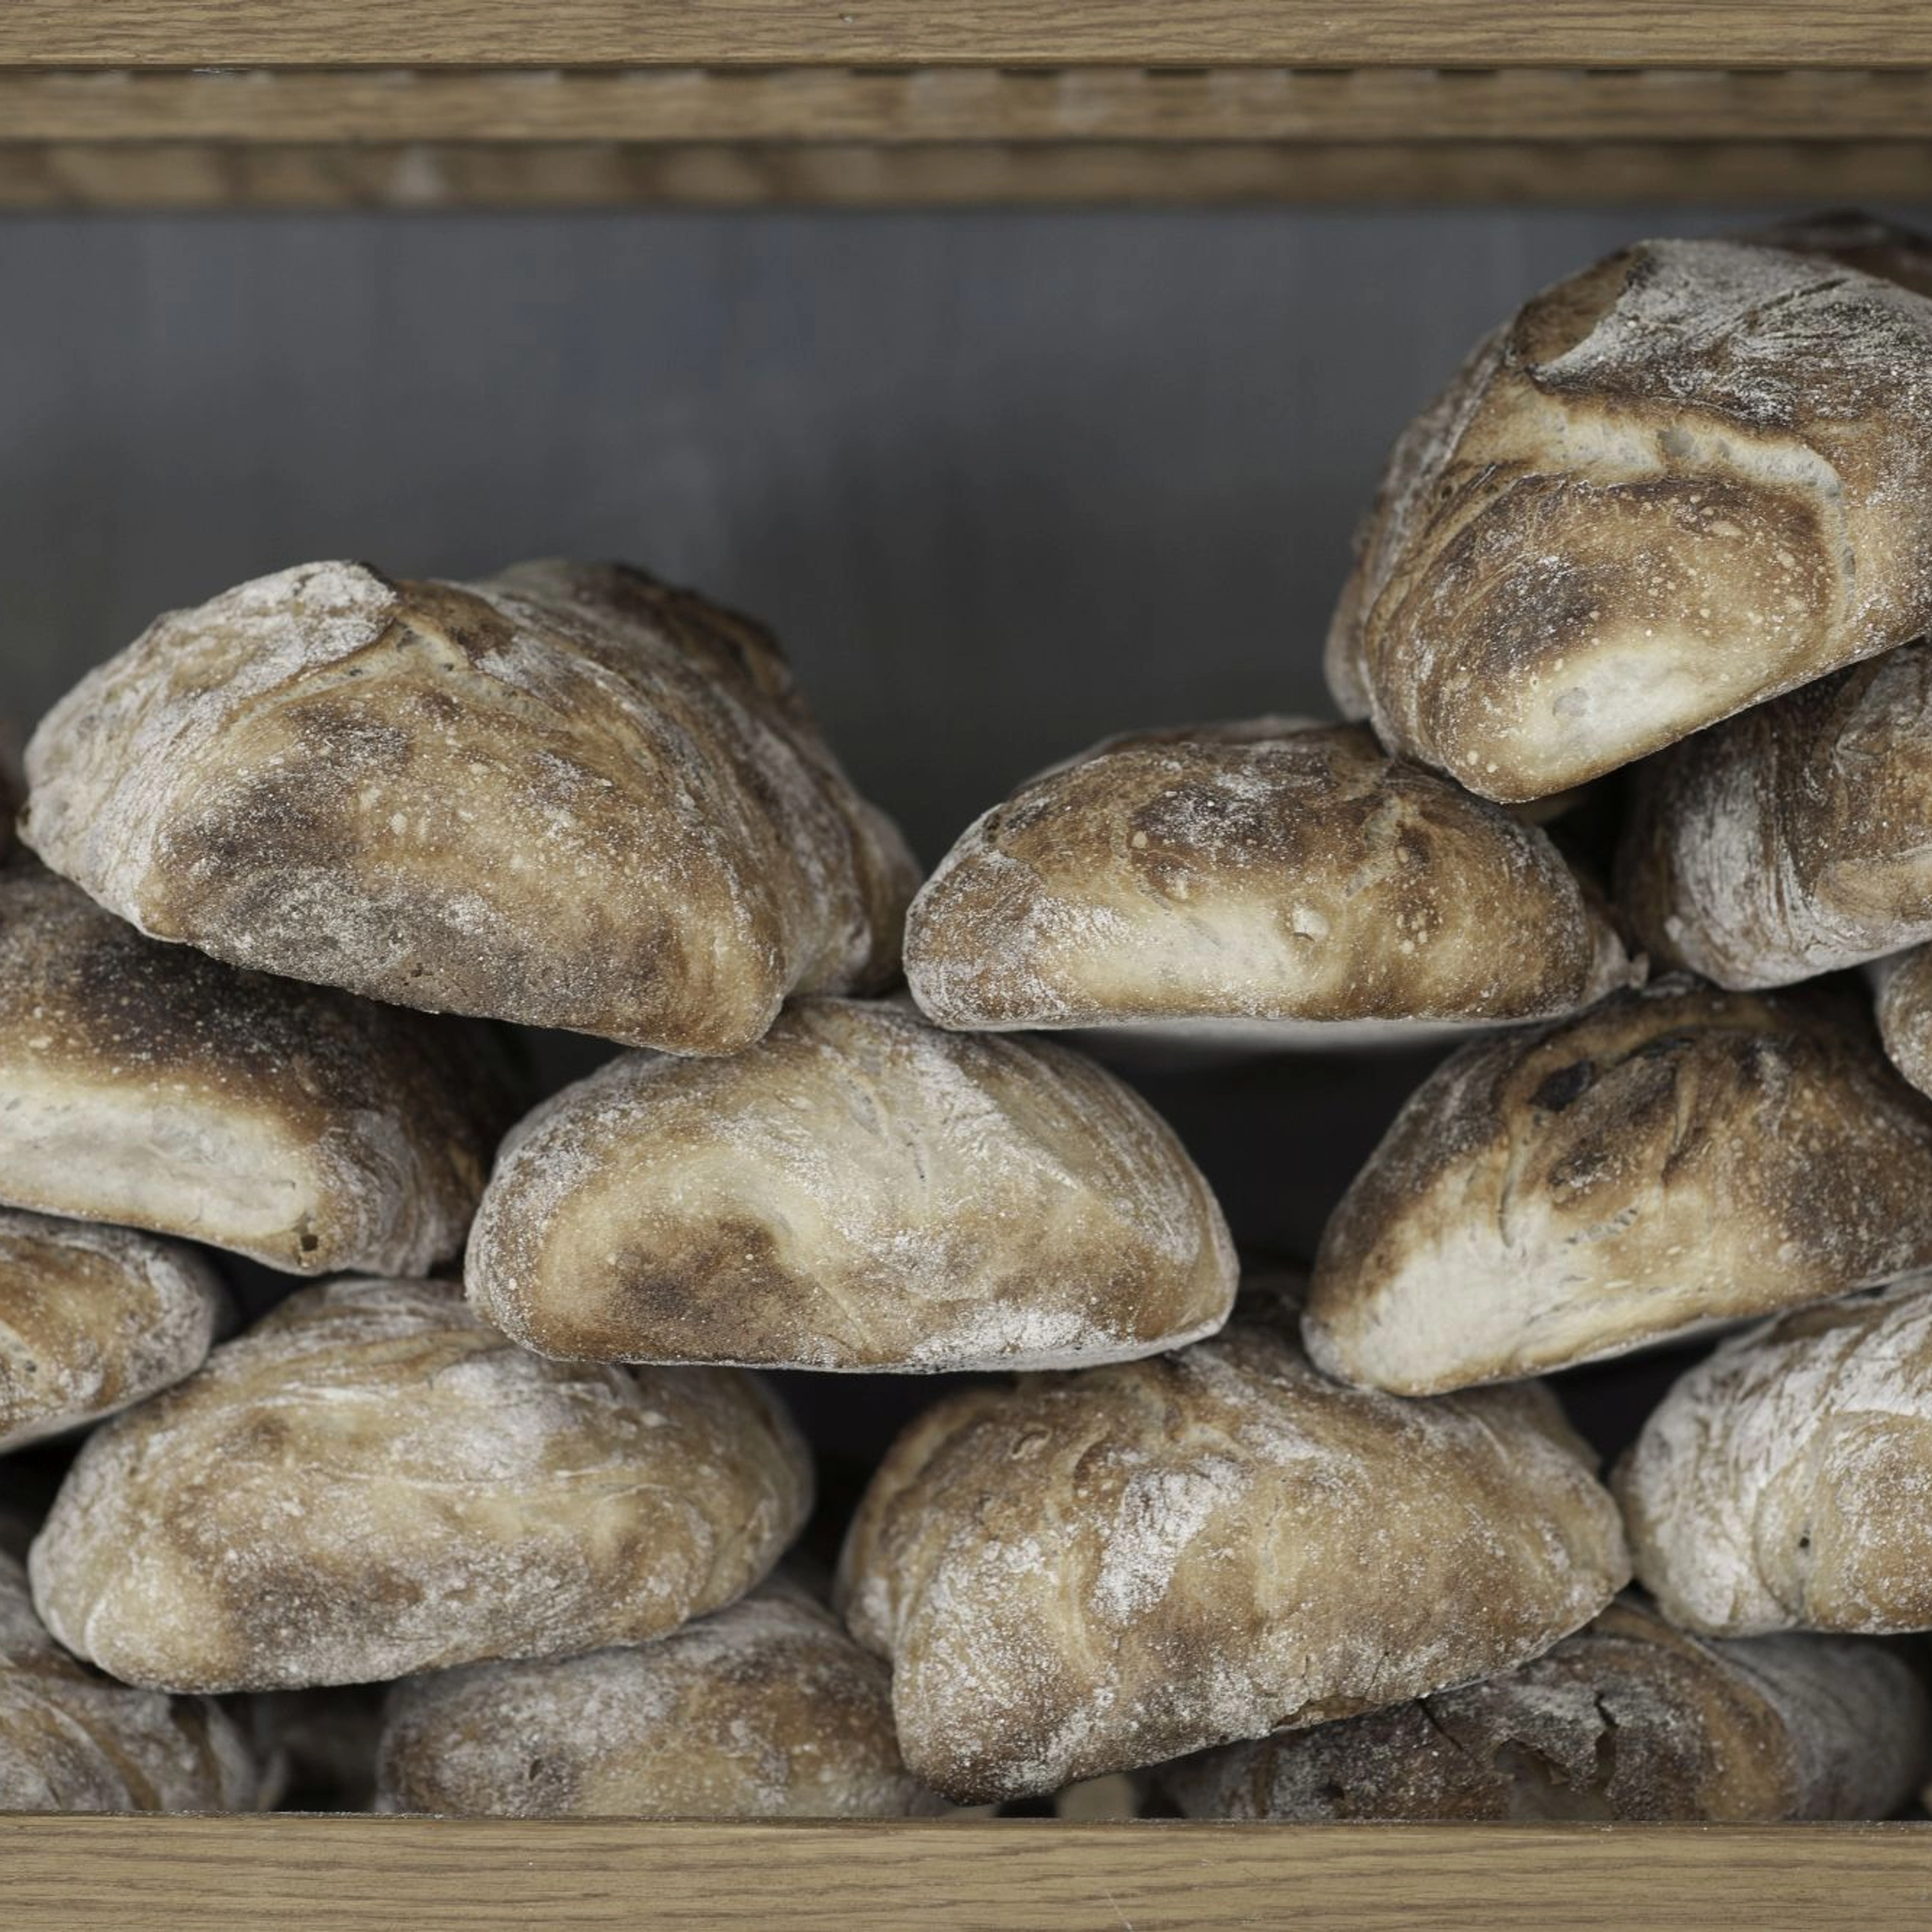 Bread form Colonialen in Bergen - Norway